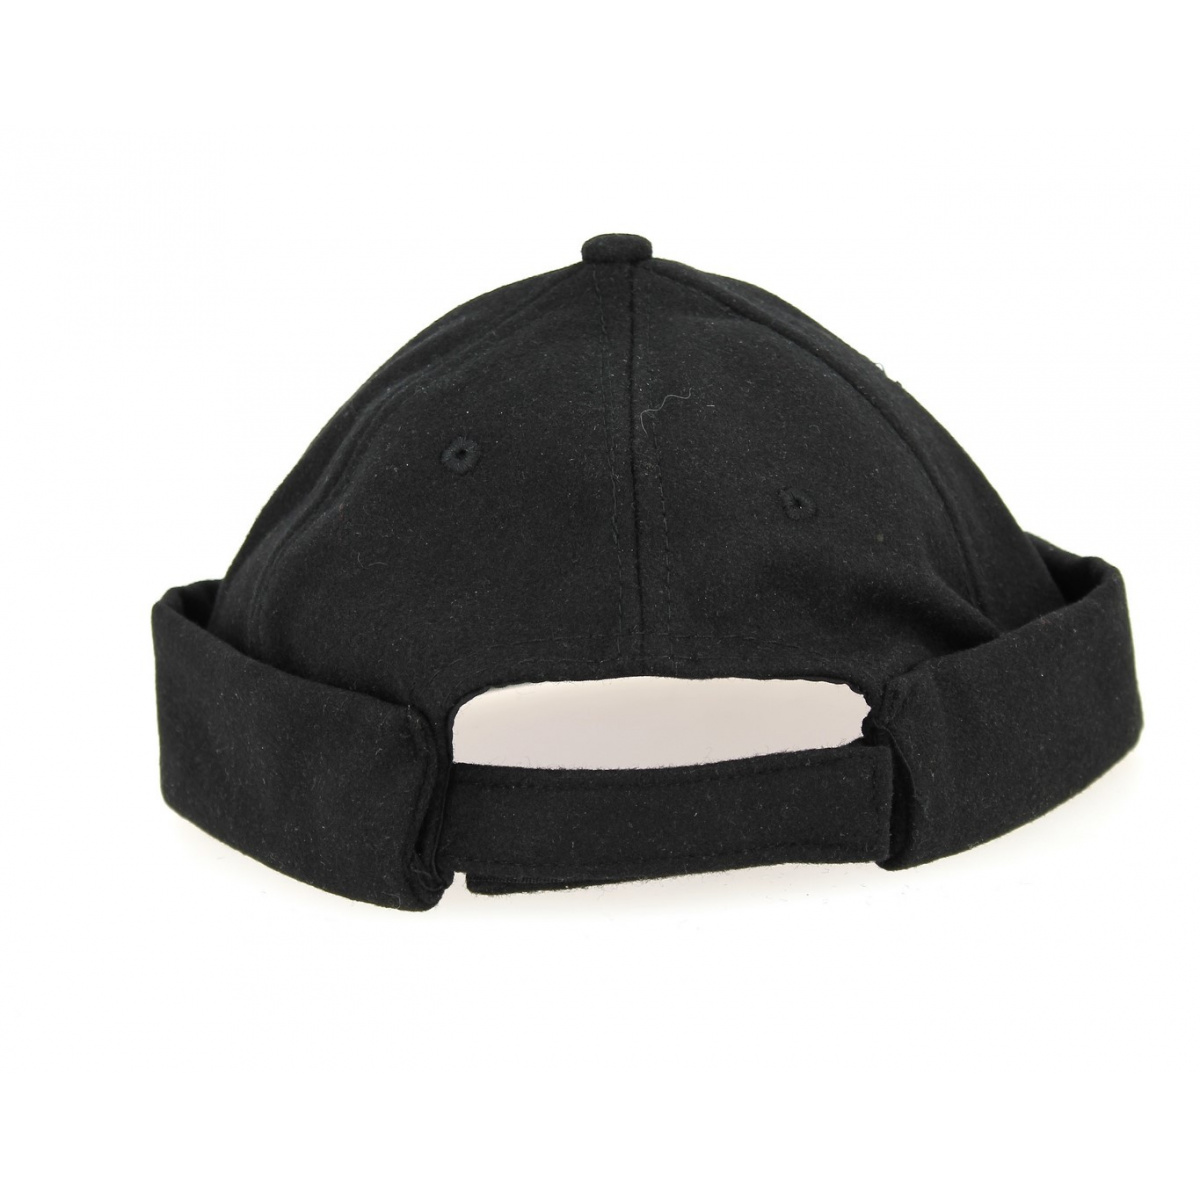 Bonnet marin breton ⇒ Achat bonnet miki pour homme en coton Reference :  5242